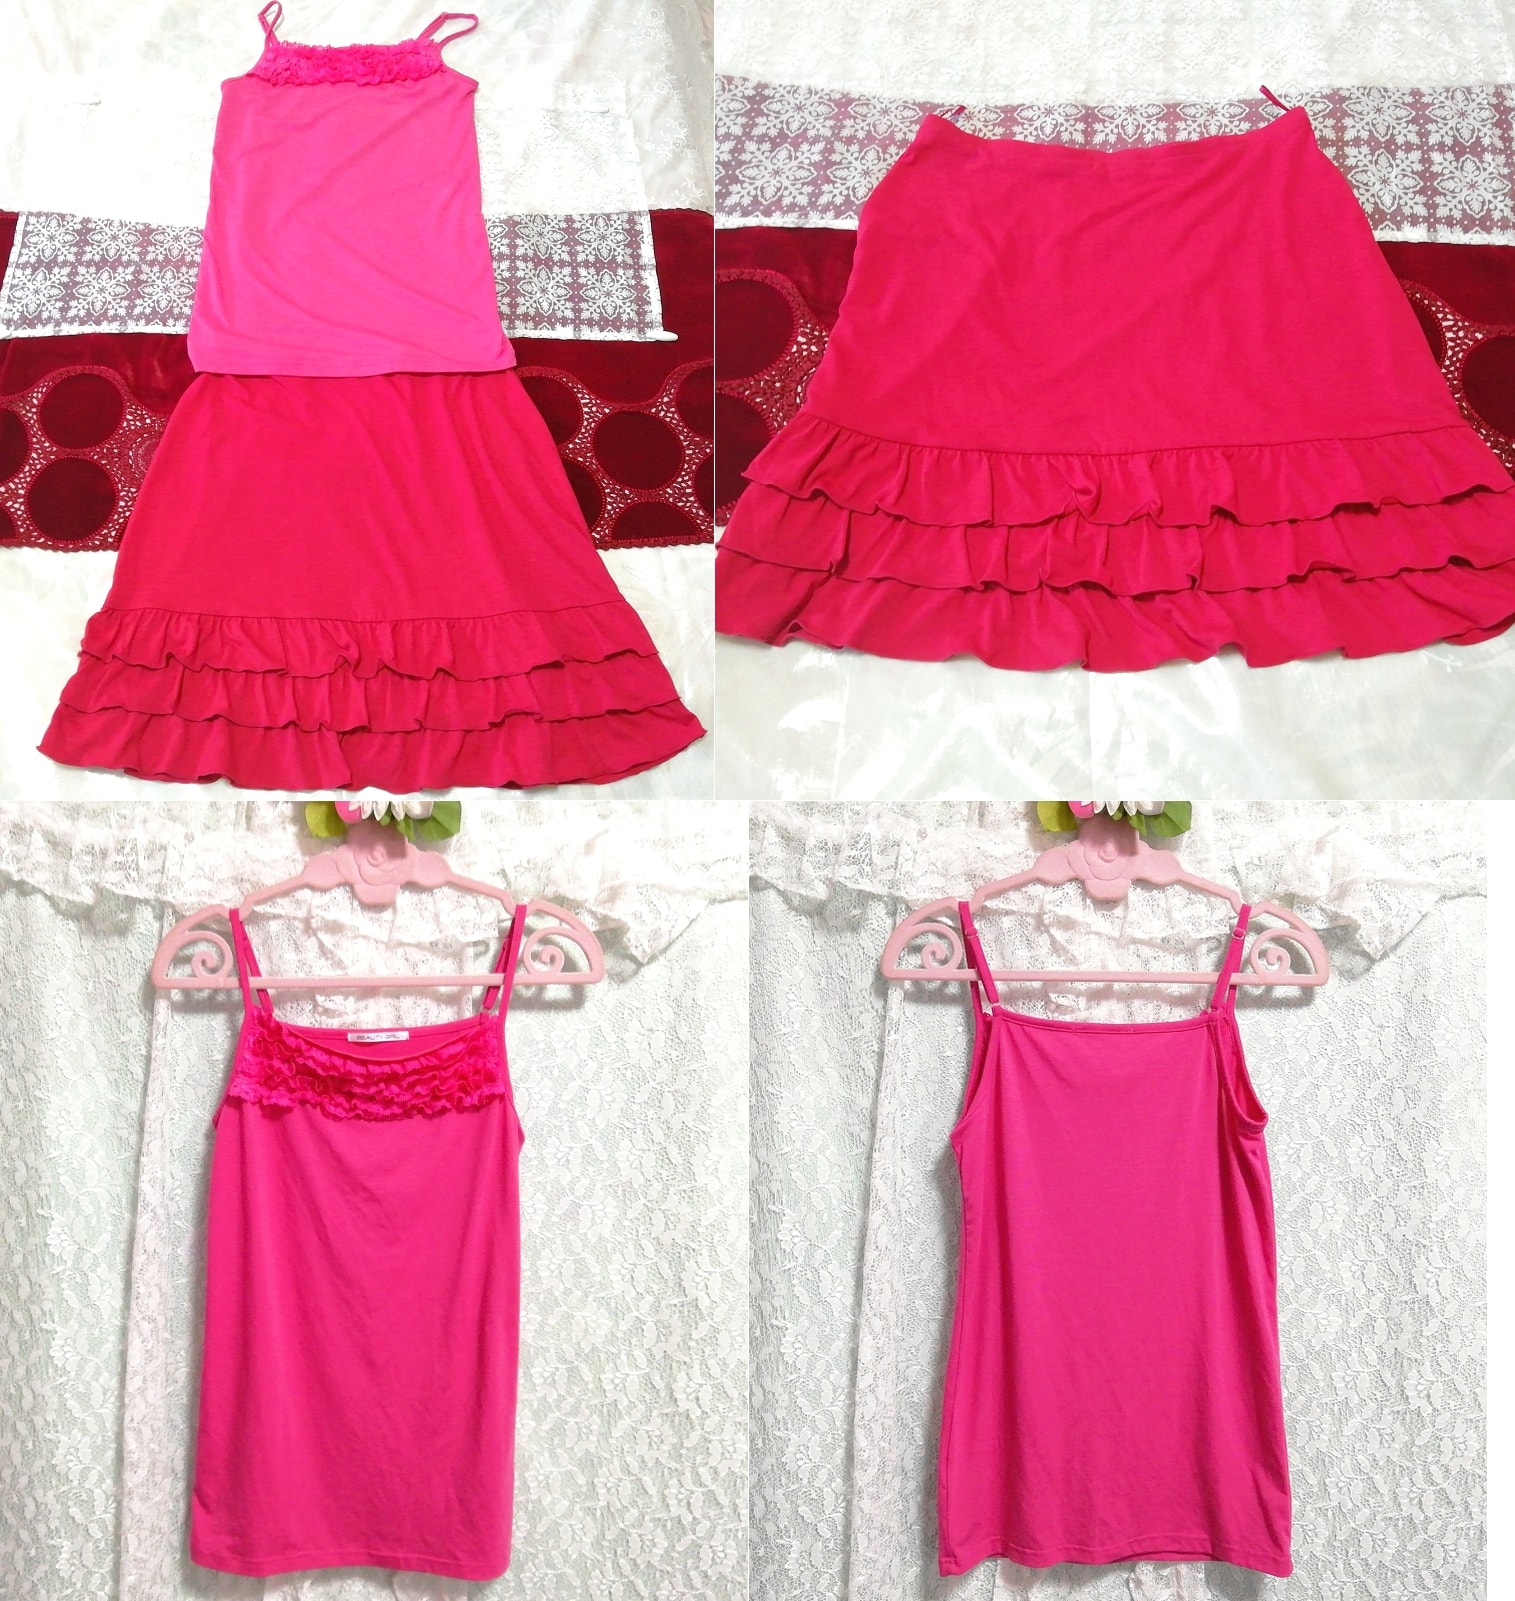 Rosa Spitzen-Camisole-Negligé-Nachthemd, roter Rüschen-Minirock, 2 Stück, Mode, Frauenmode, Nachtwäsche, Pyjama